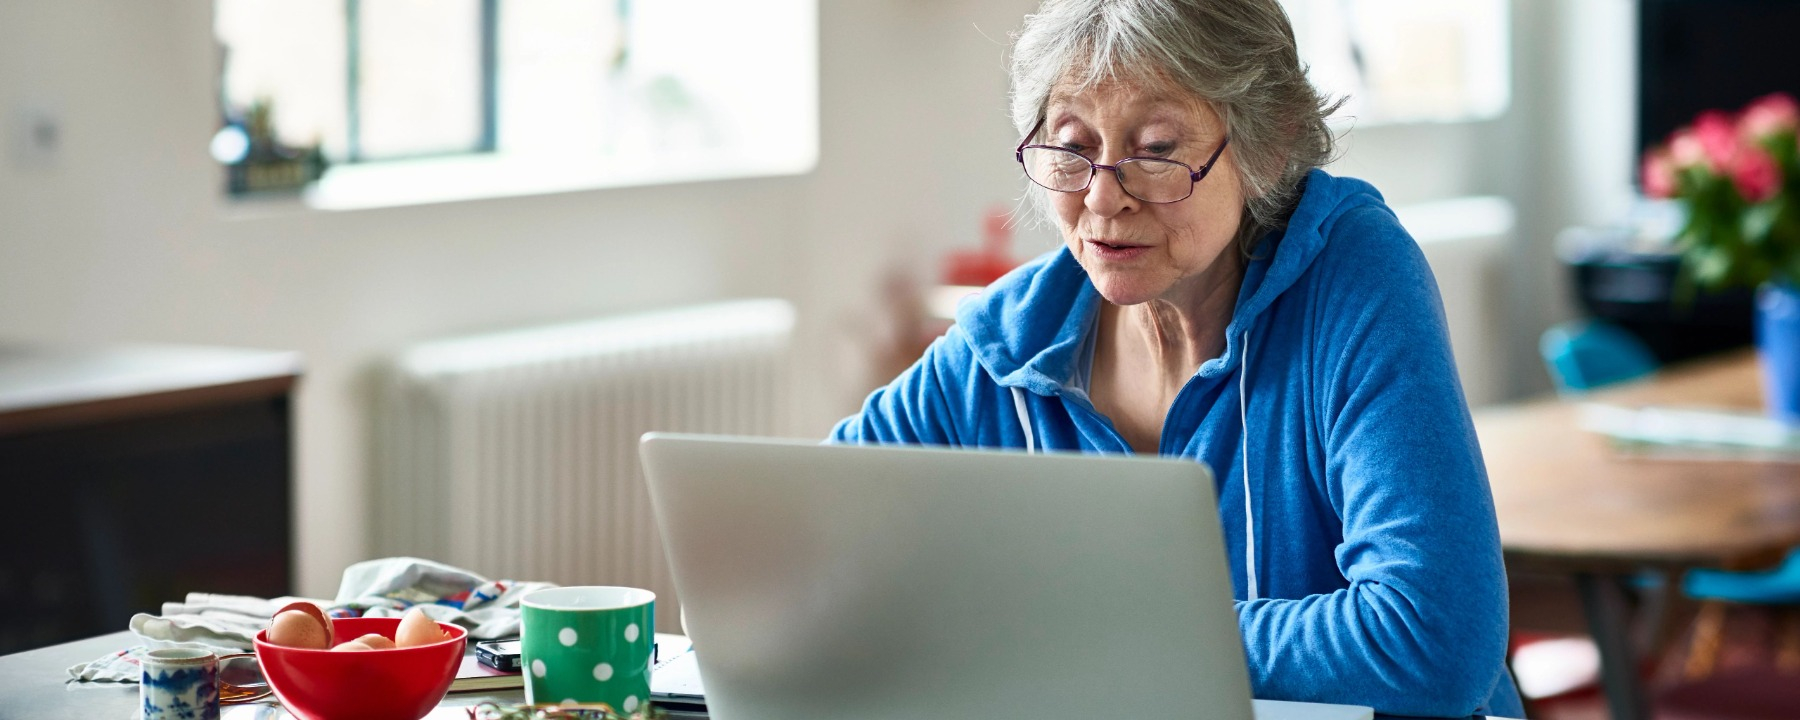 old women using laptop - 1800*720